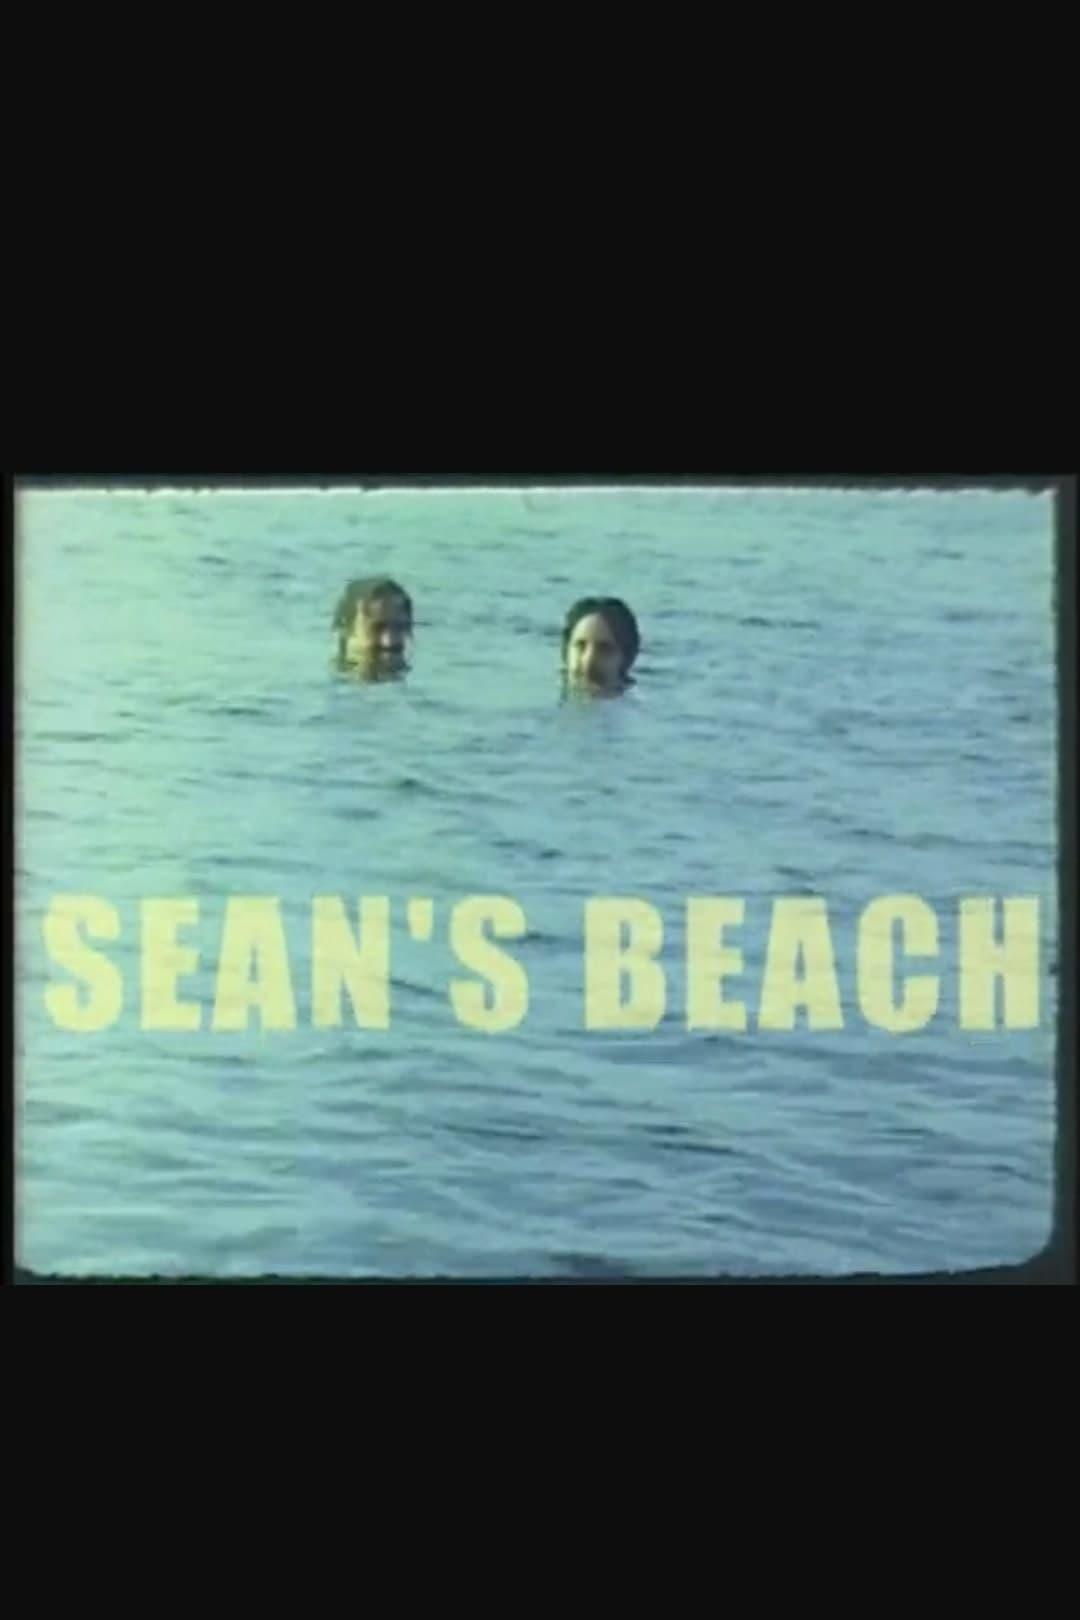 Sean's Beach poster